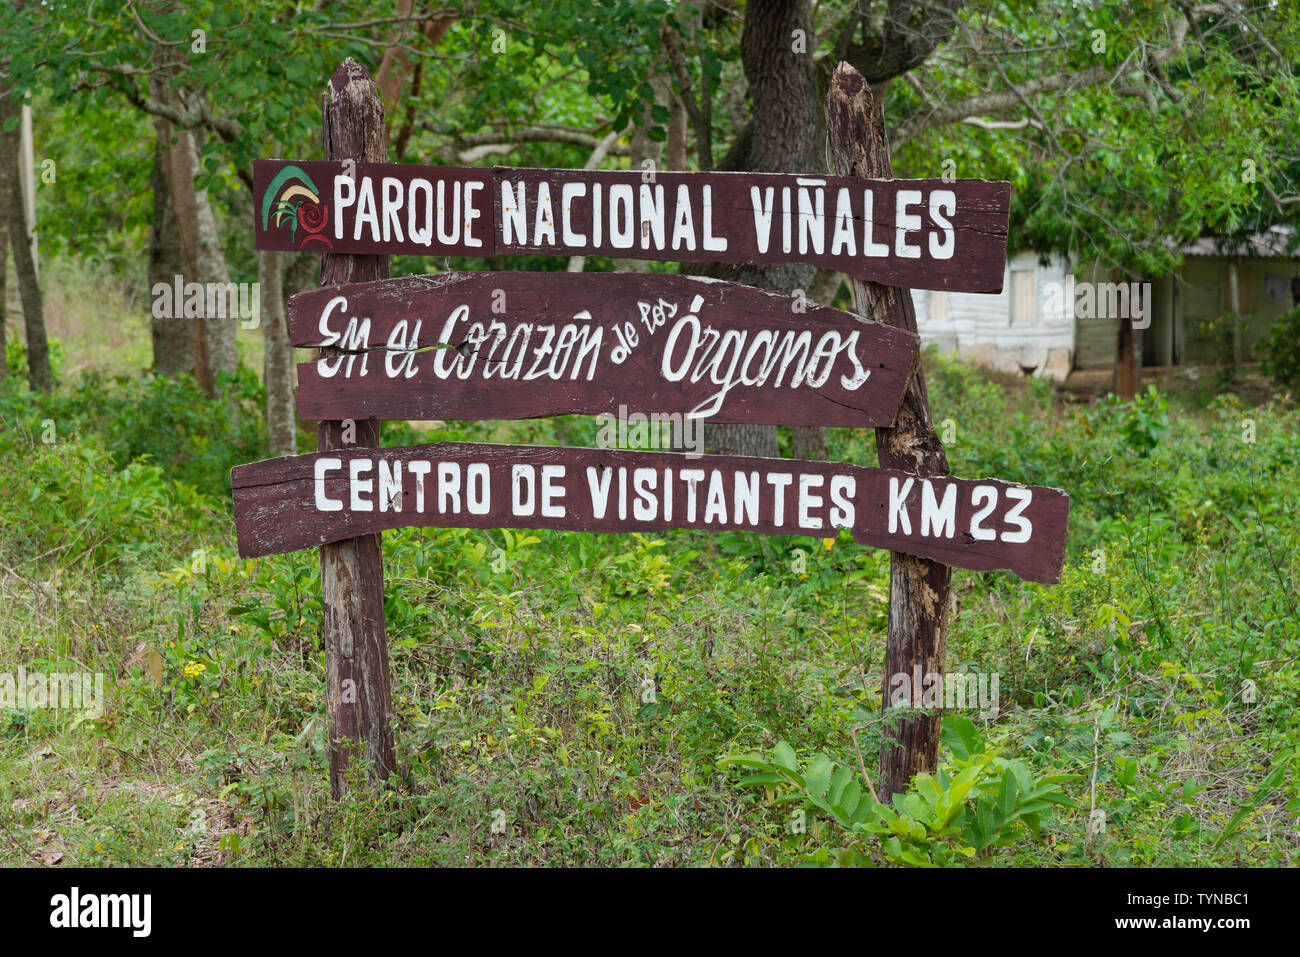 Parque Nacional Vinales sign - Vinales, Pinar Del Rio Province, Cuba, Caribbean Stock Photo